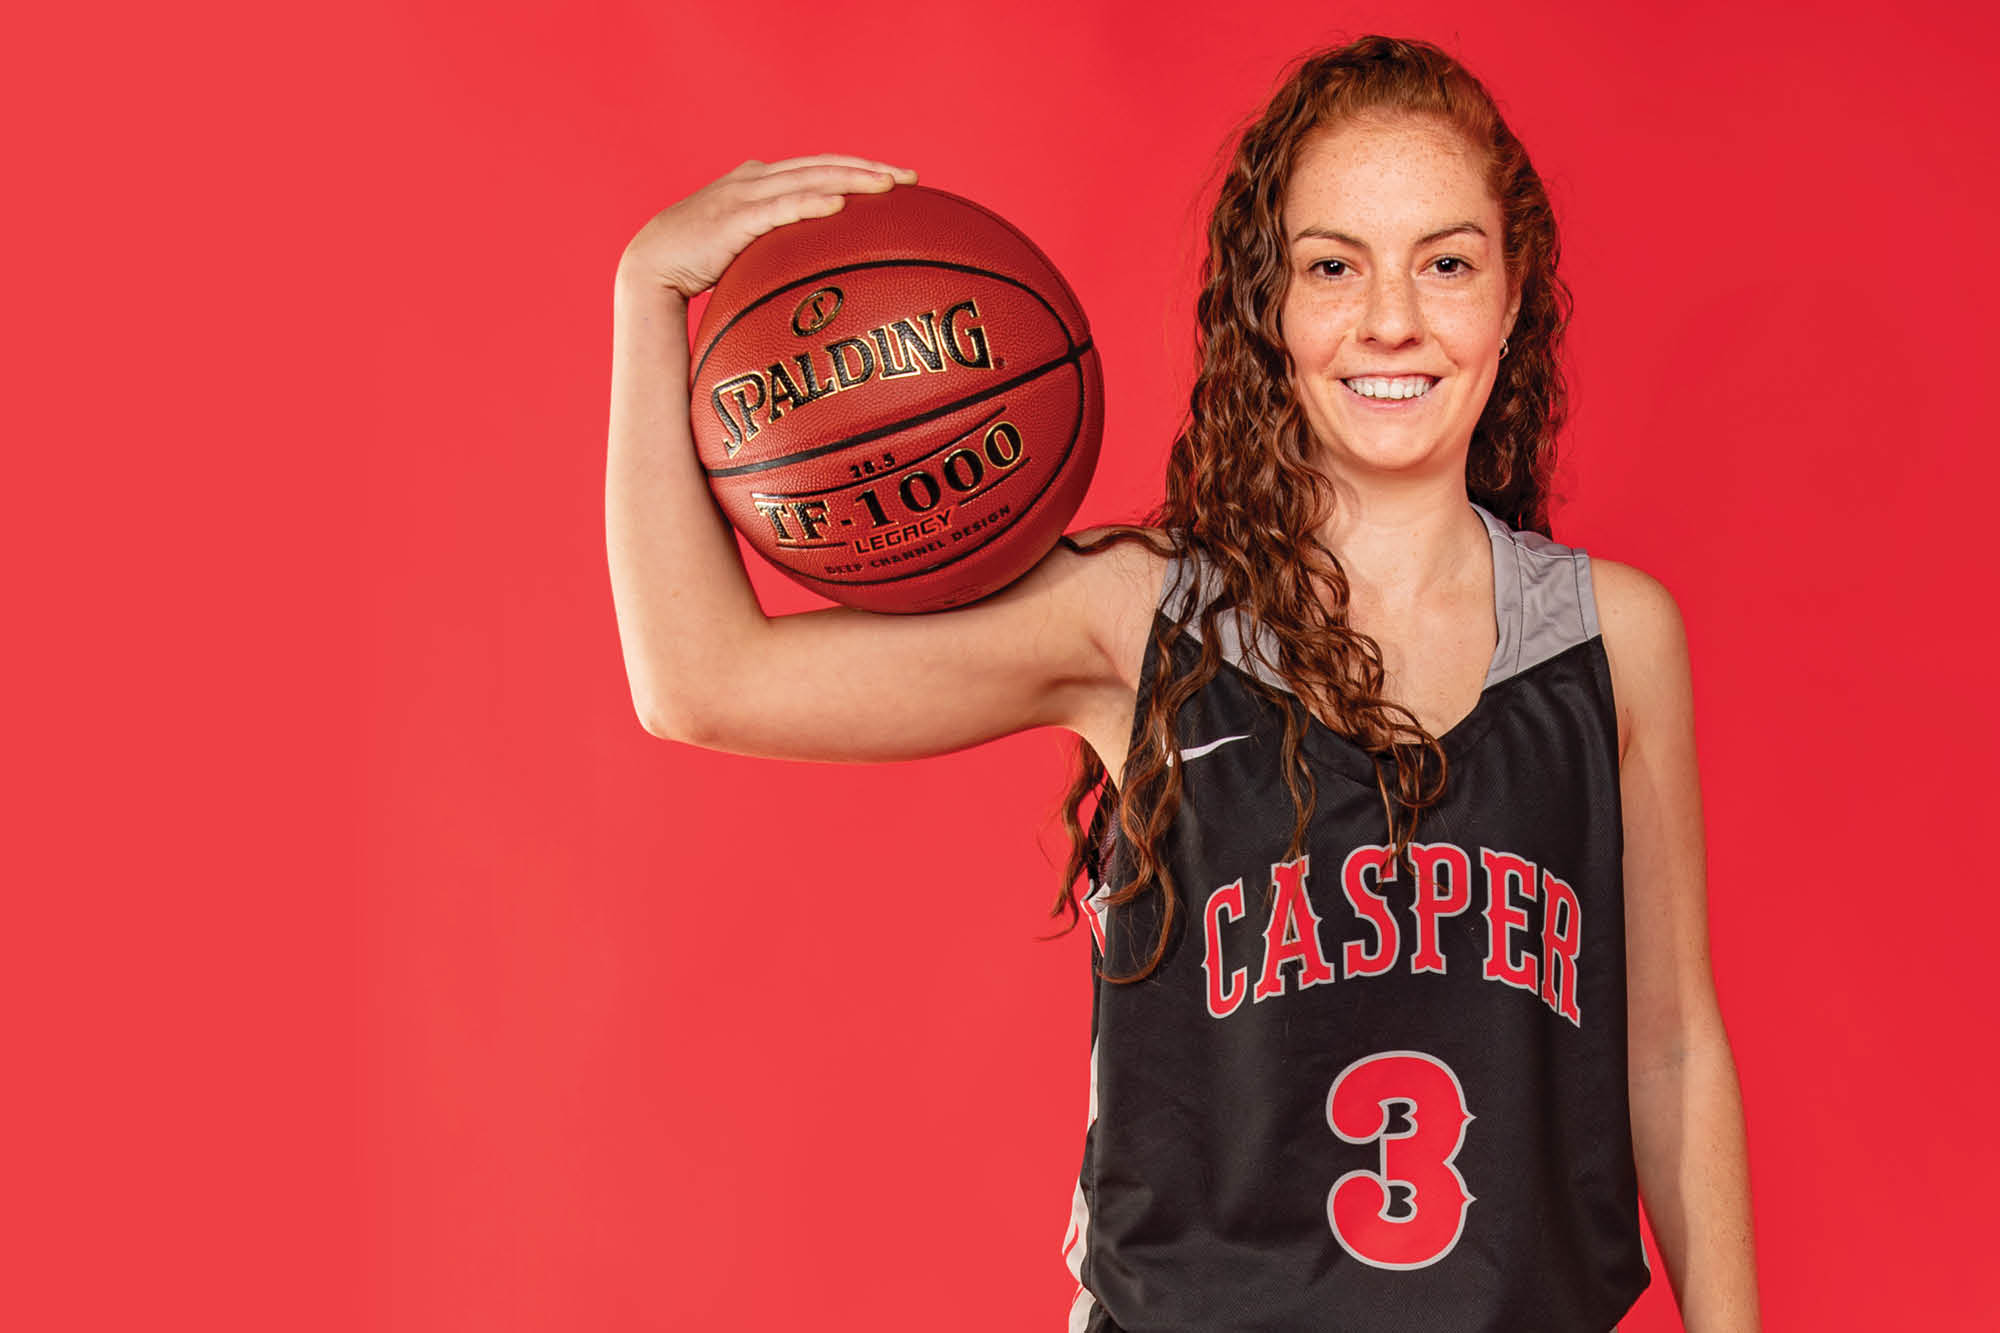 Photo of Casper College Women's Basketball player Raquel Ferrer-Bernad